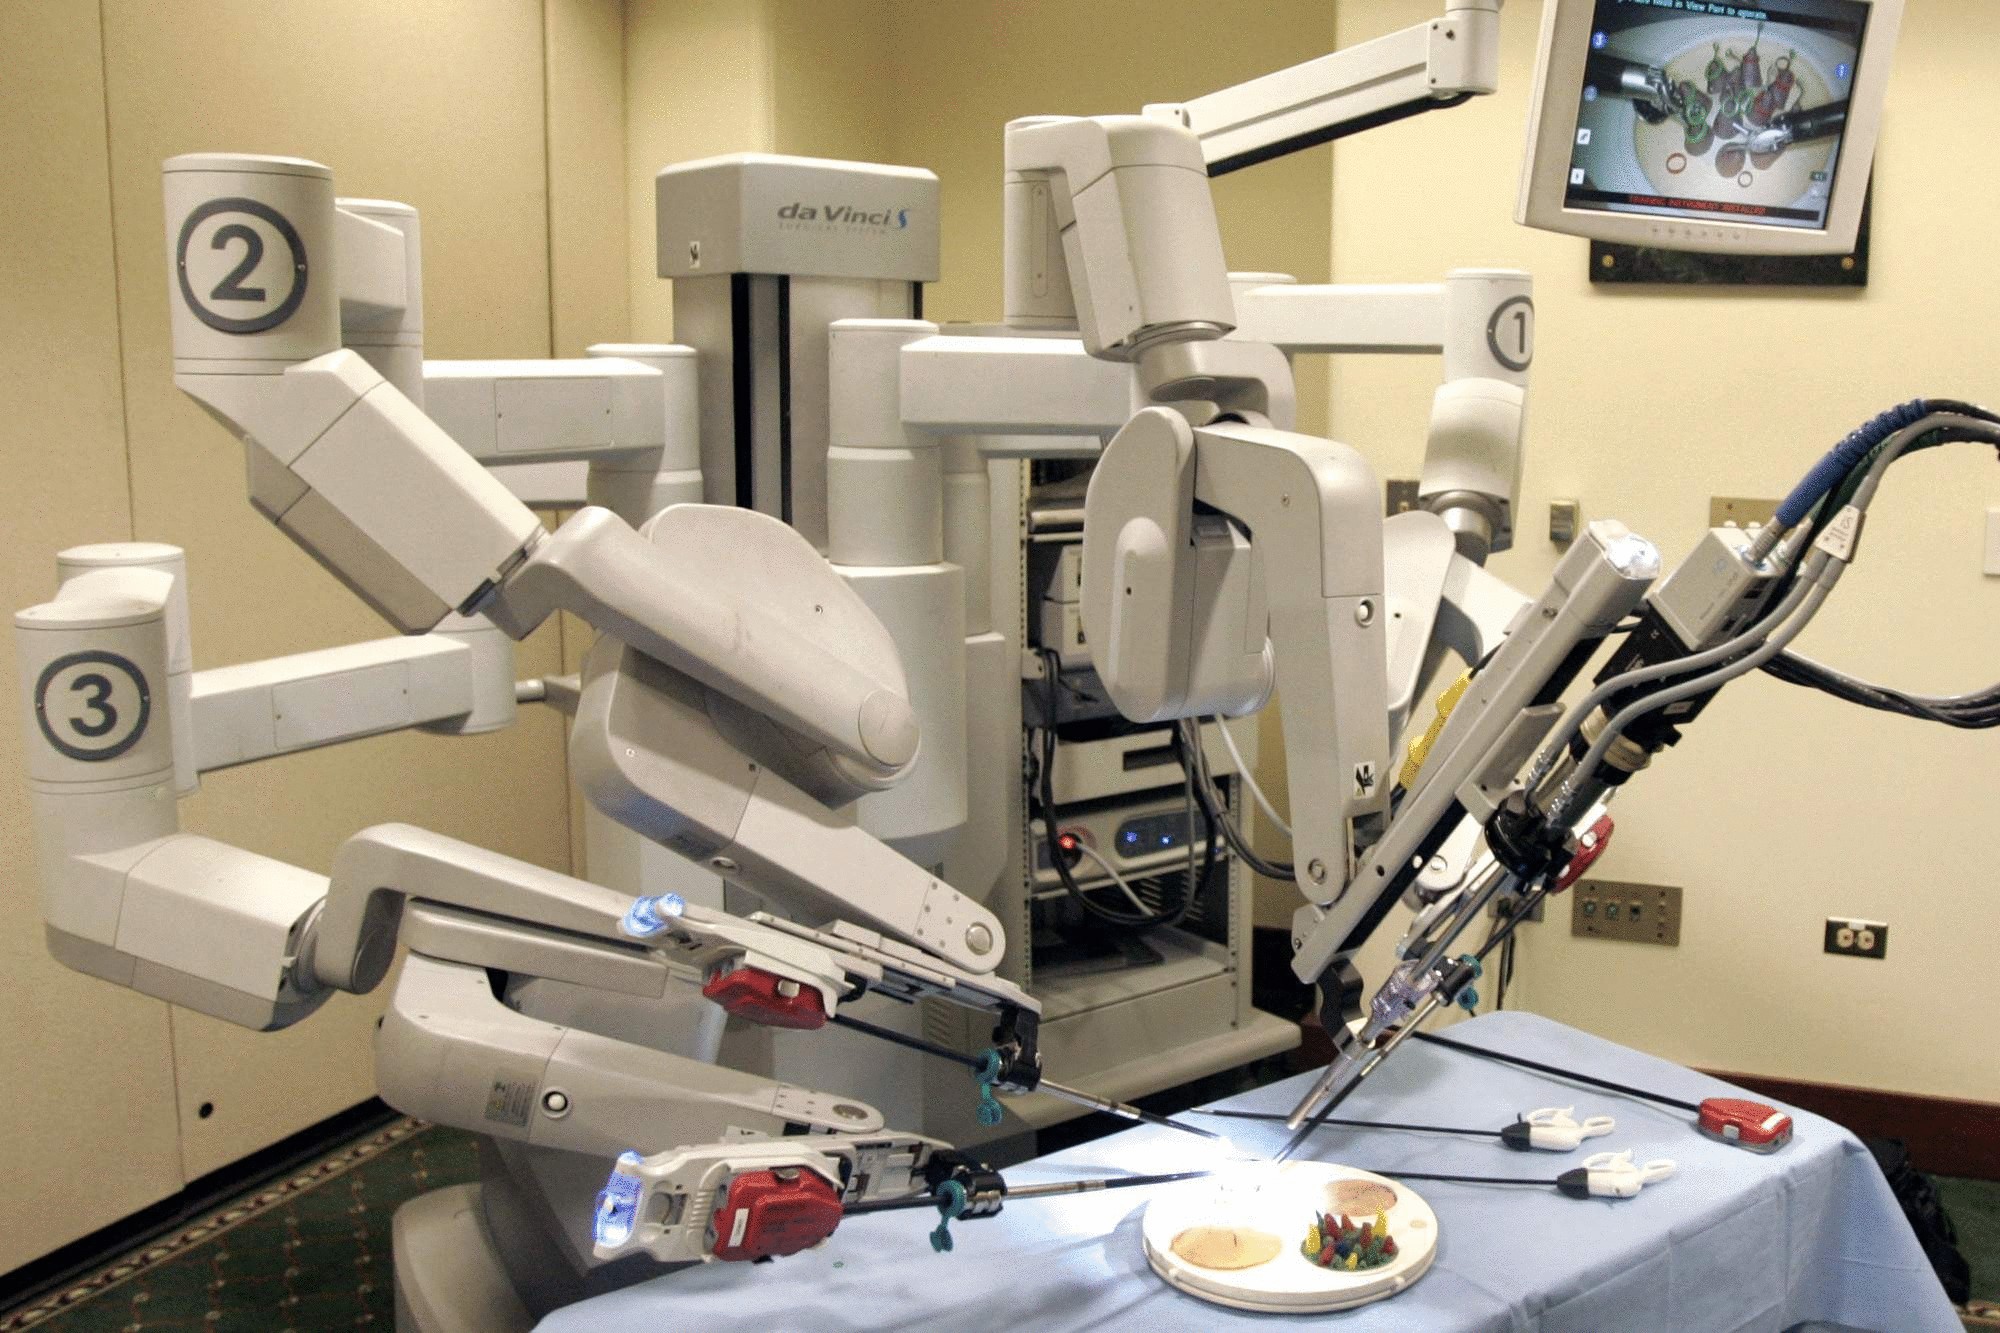 Робот провел операцию. Робот-хирург da Vinci (да Винчи). Da Vinci операционный робот. Робот робот-хирург DAVINCI. Робот-ассистированная хирургическая система «da Vinci».